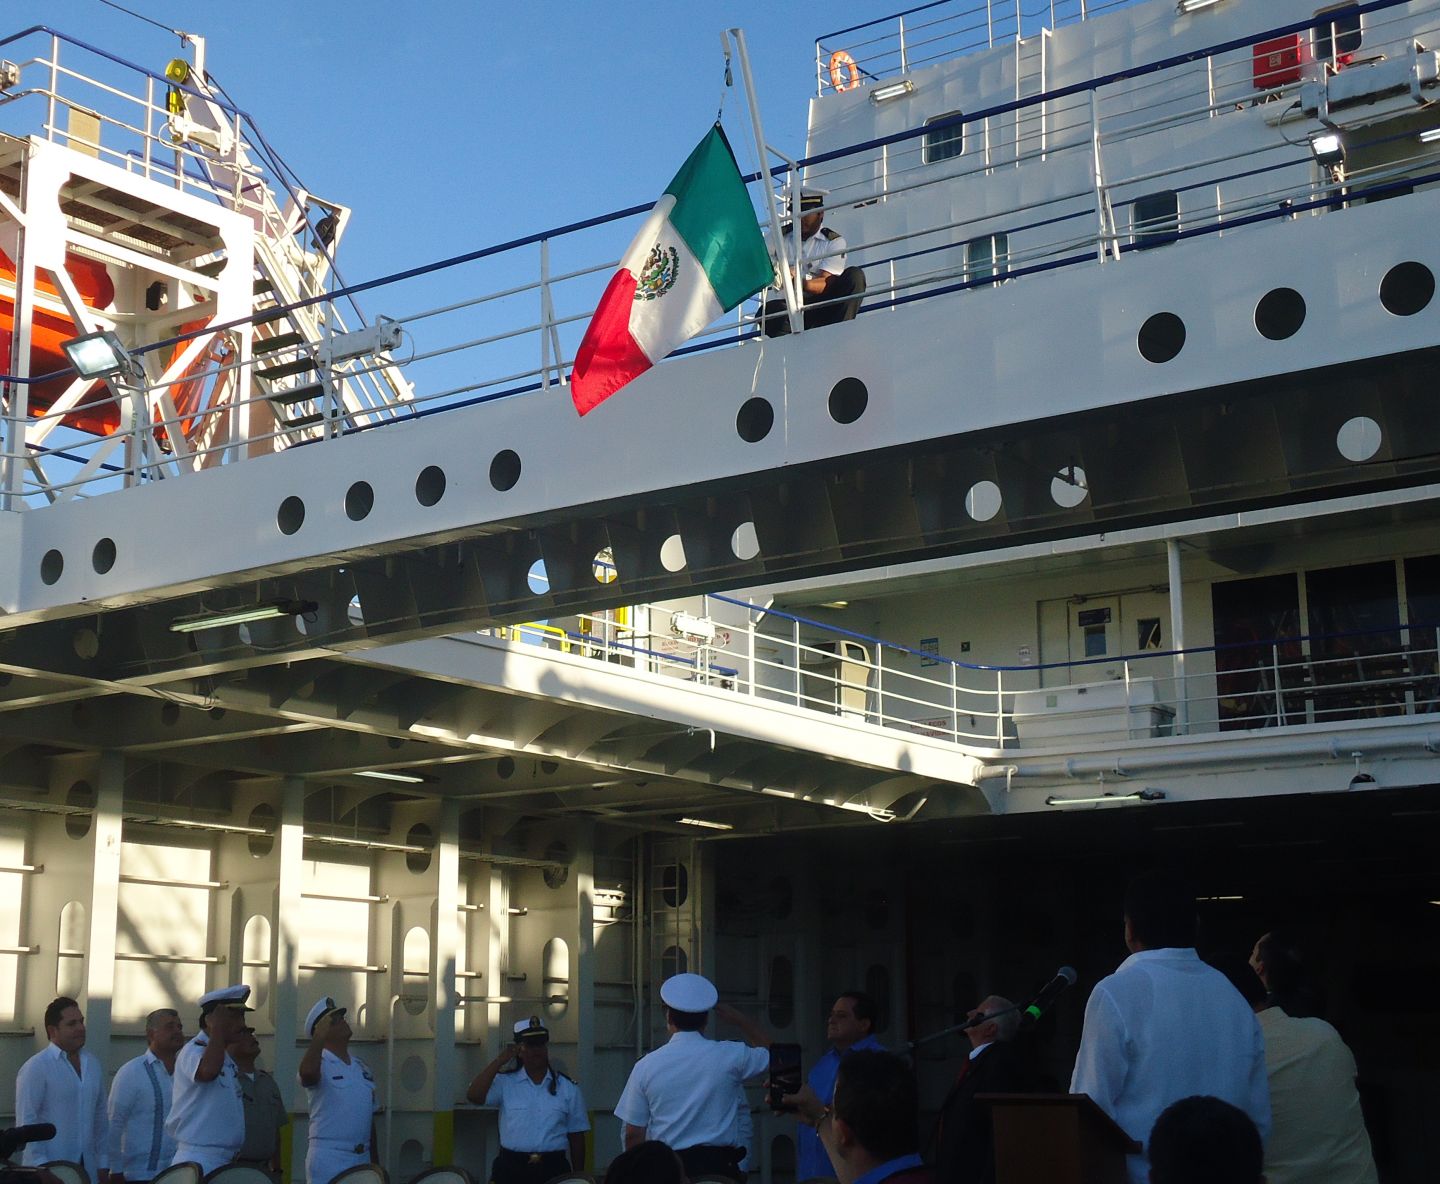 La Secretaría De Marina, Como Autoridad Marítima Nacional, Participa En La Ceremonia De Abanderamiento Del Remolcador ’México Star’